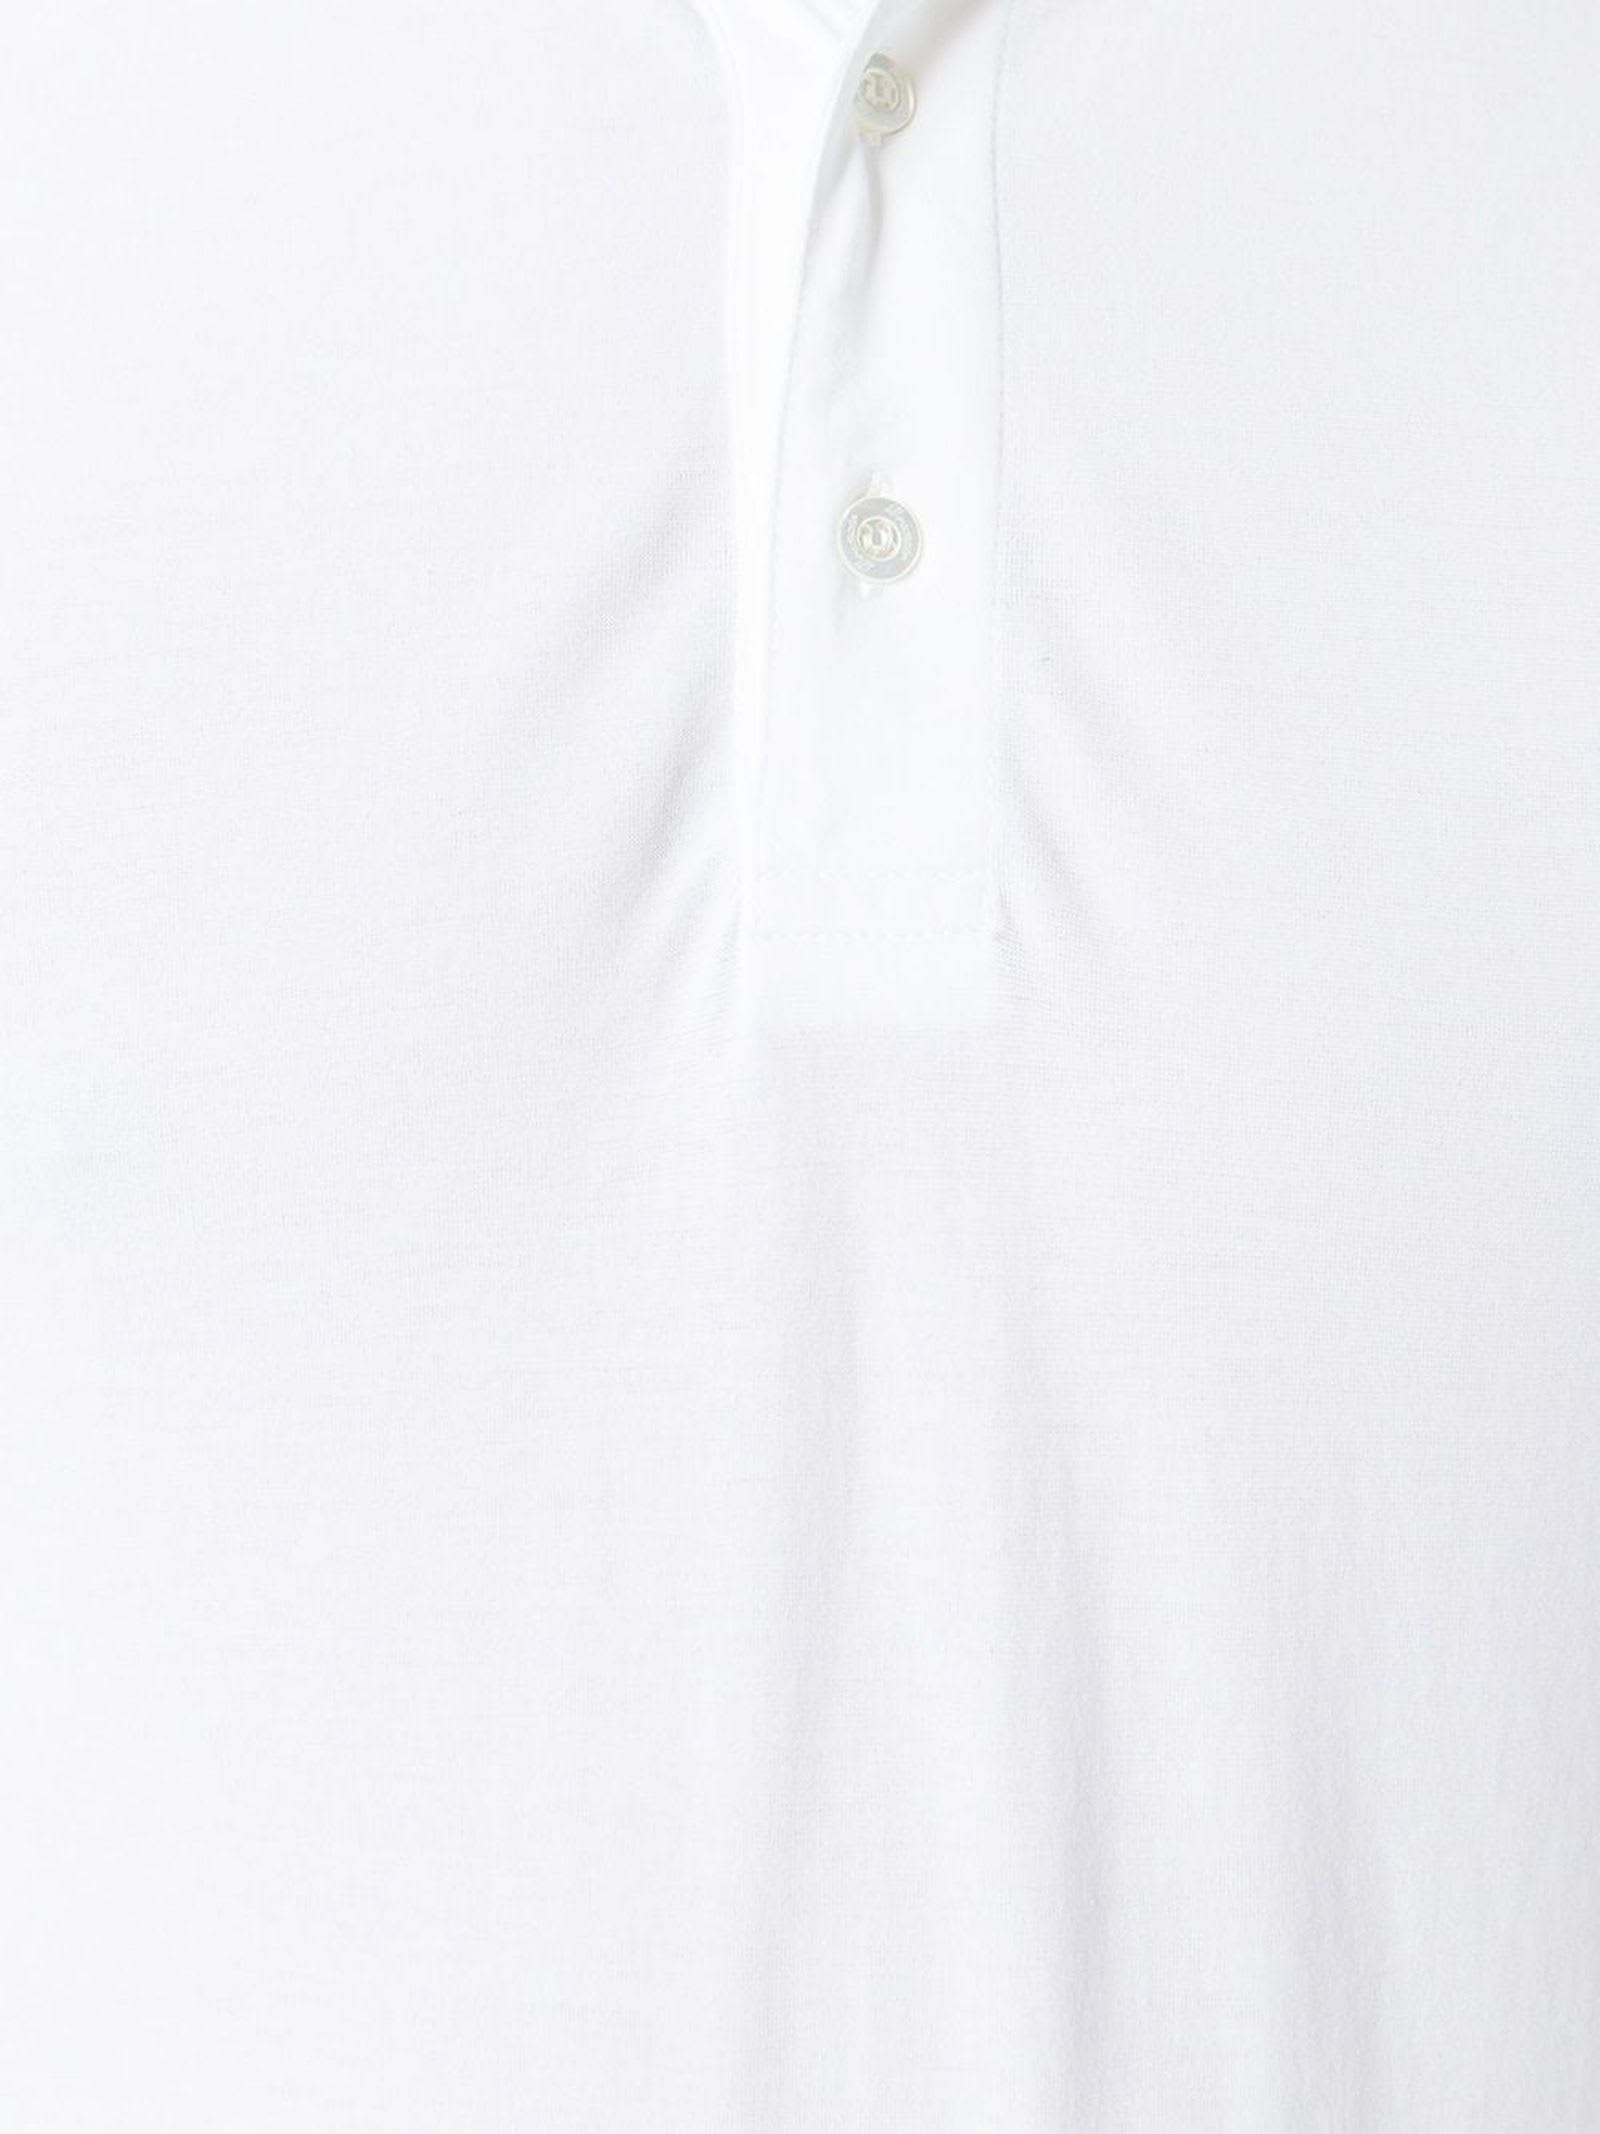 Shop Drumohr White Cotton Polo Shirt